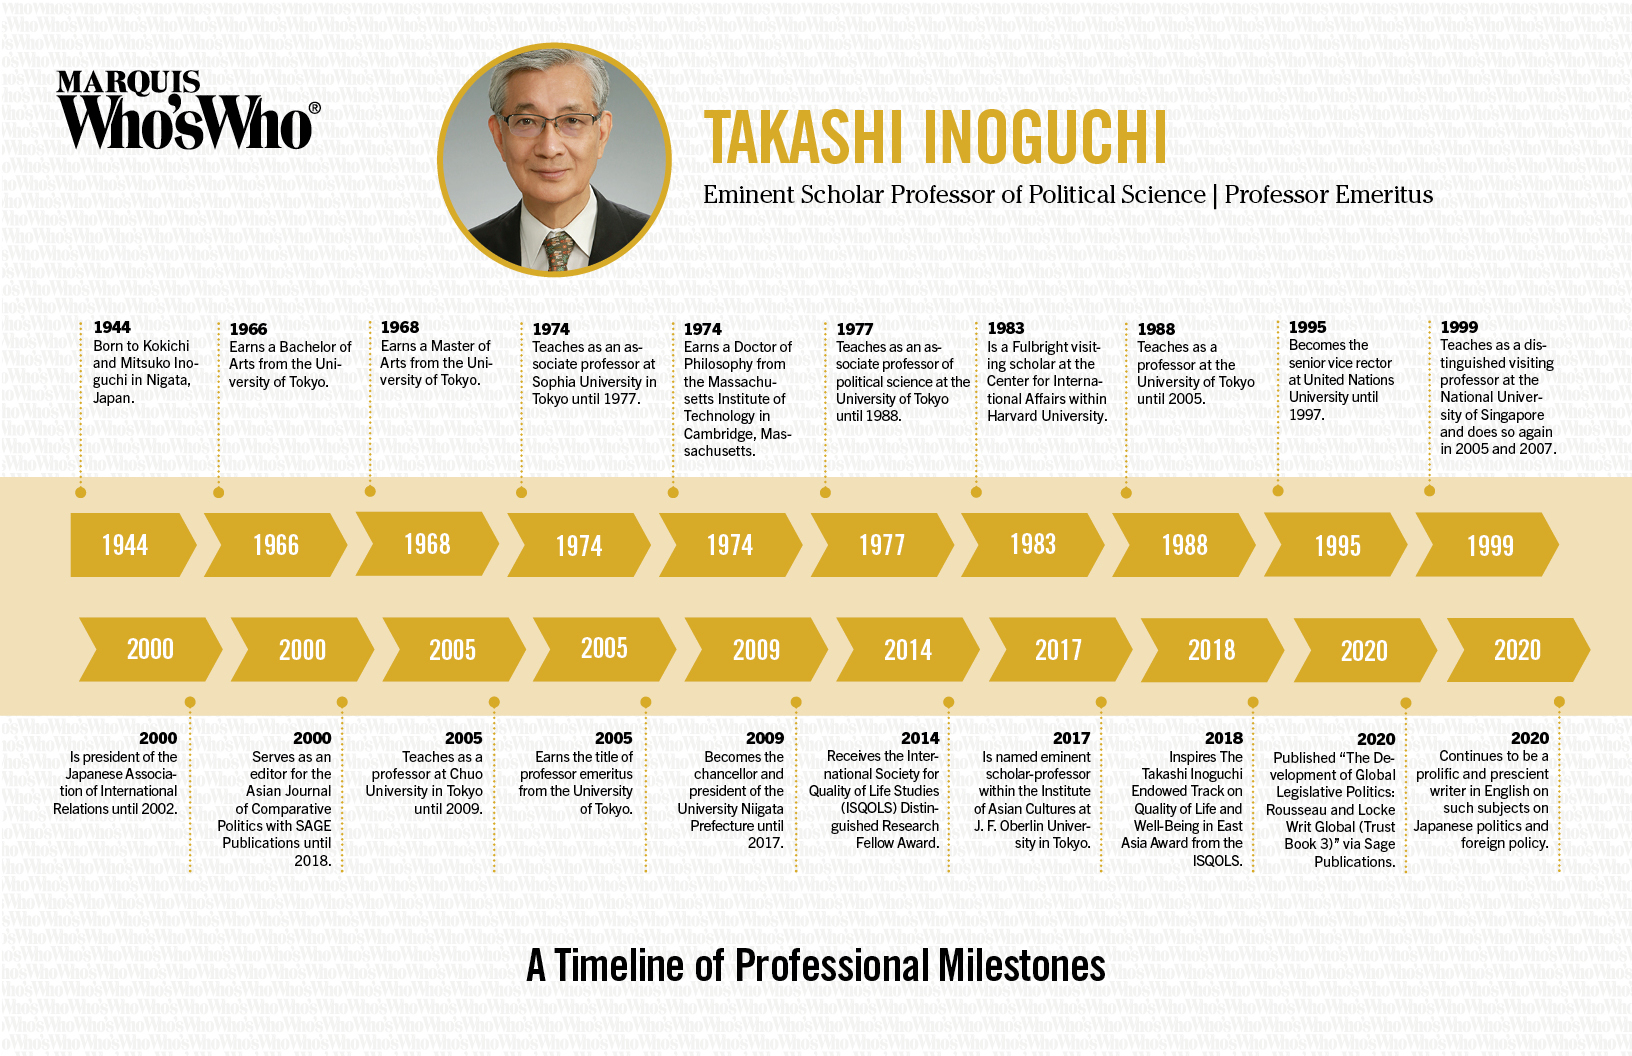 Takashi Inoguchi